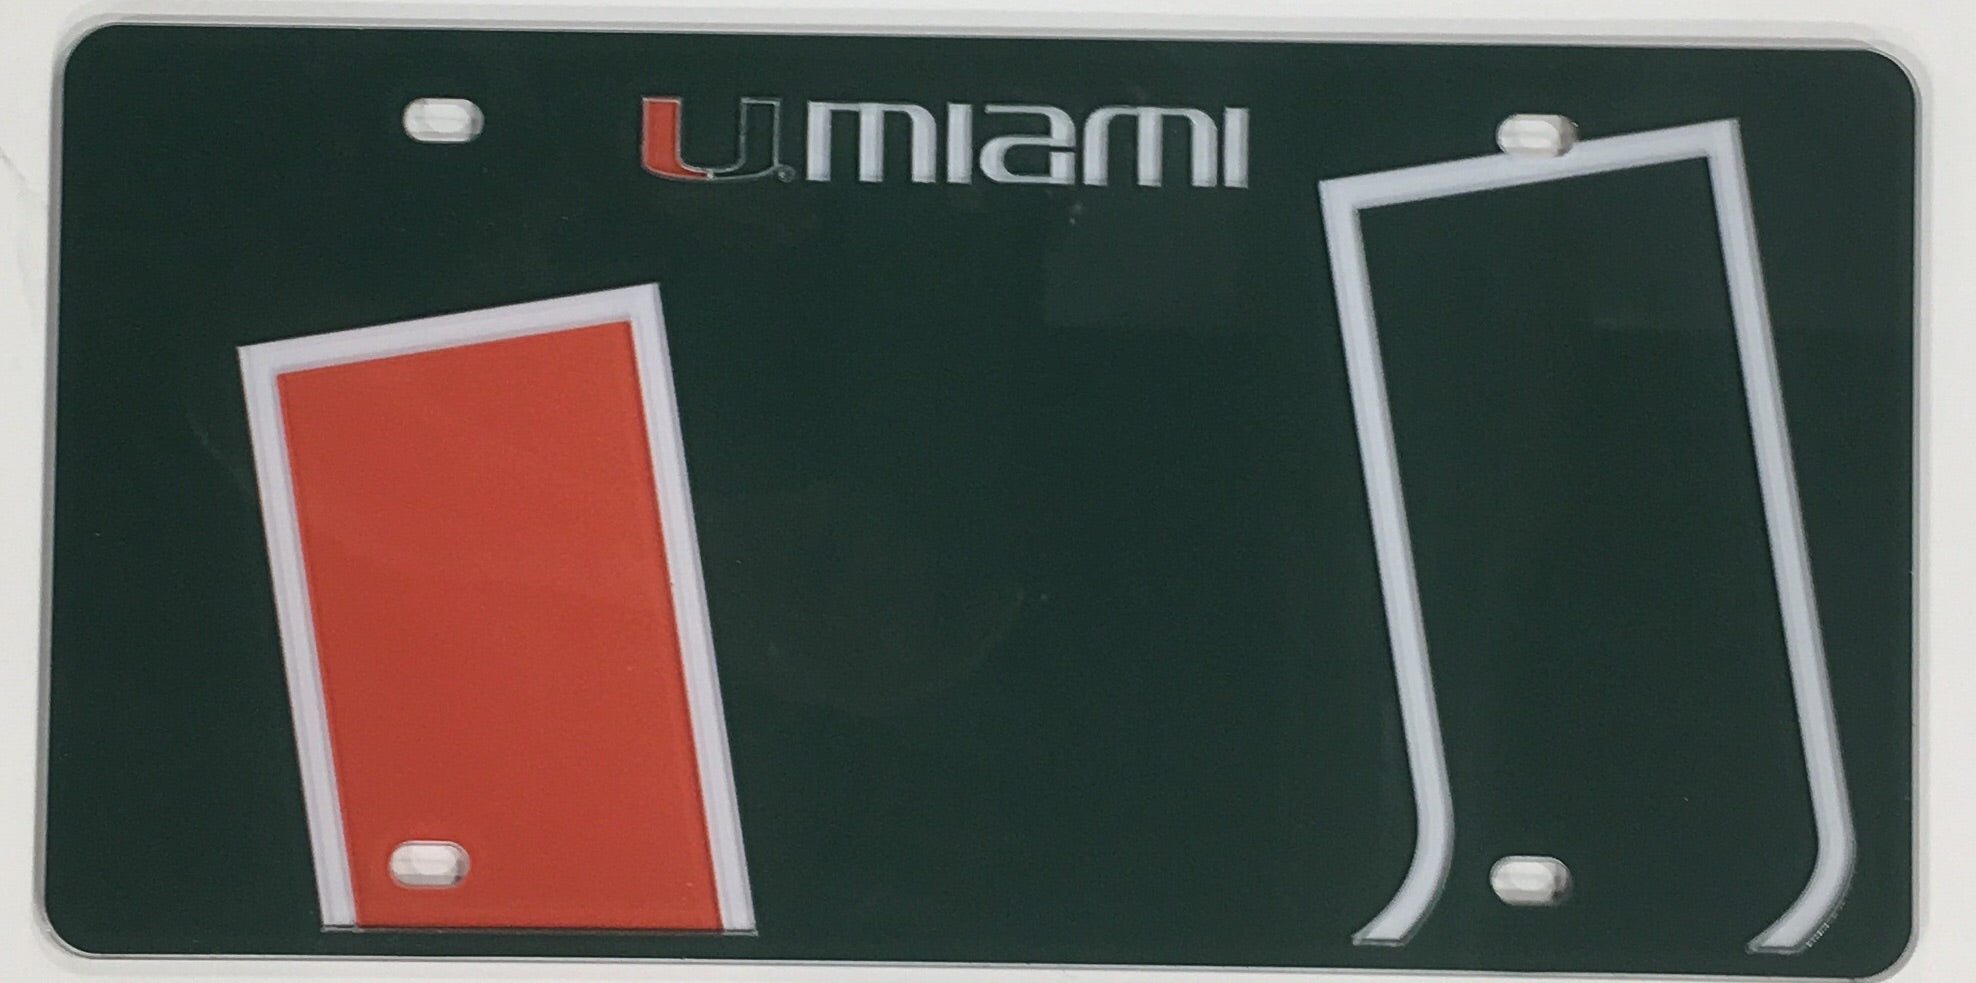 Miami Hurricanes Acrylic U Miami Green License Plate